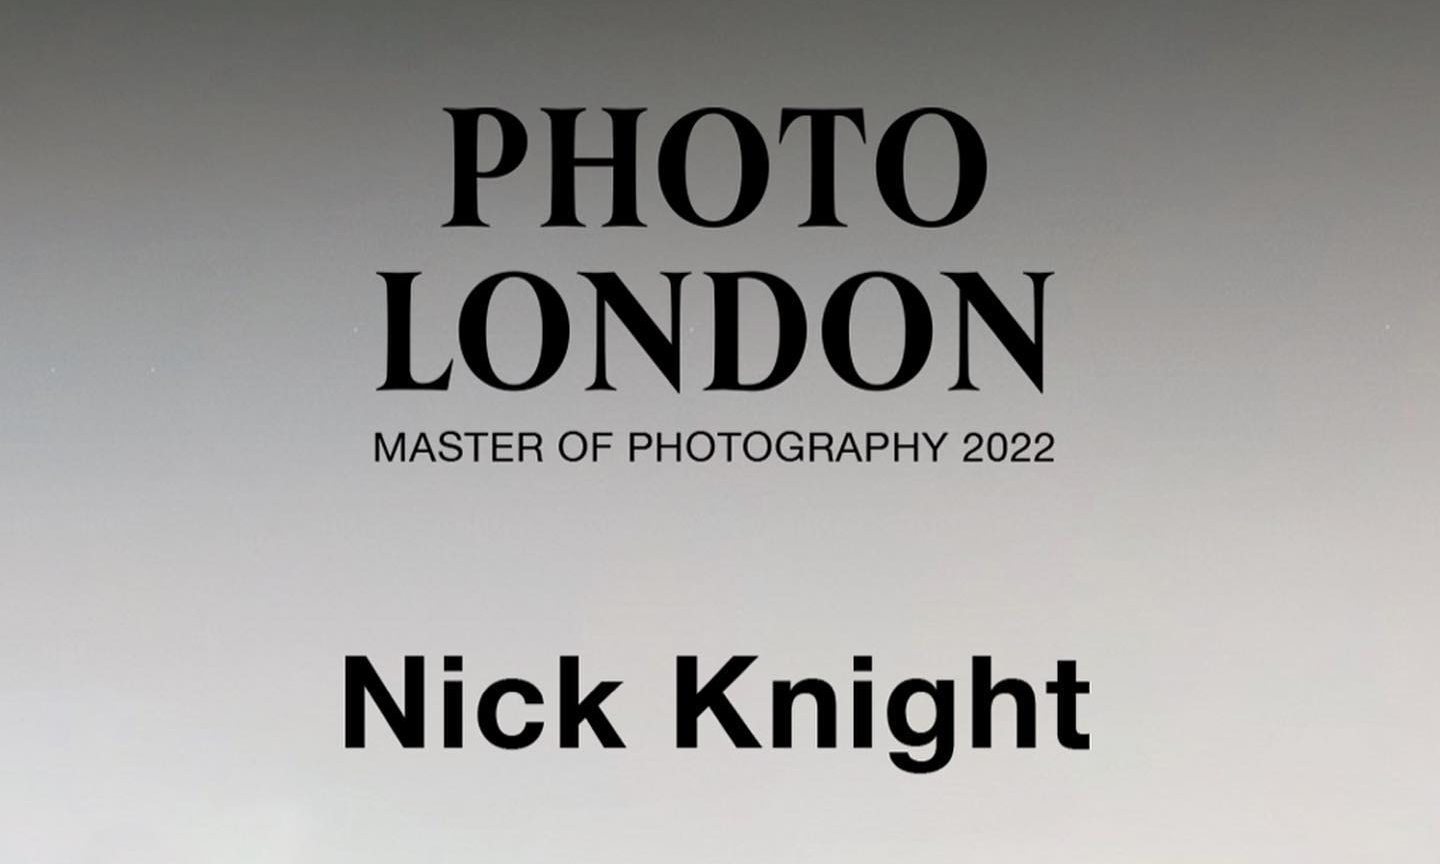 时尚摄影师 Nick knight 将在英国萨默赛特府举行摄影展览